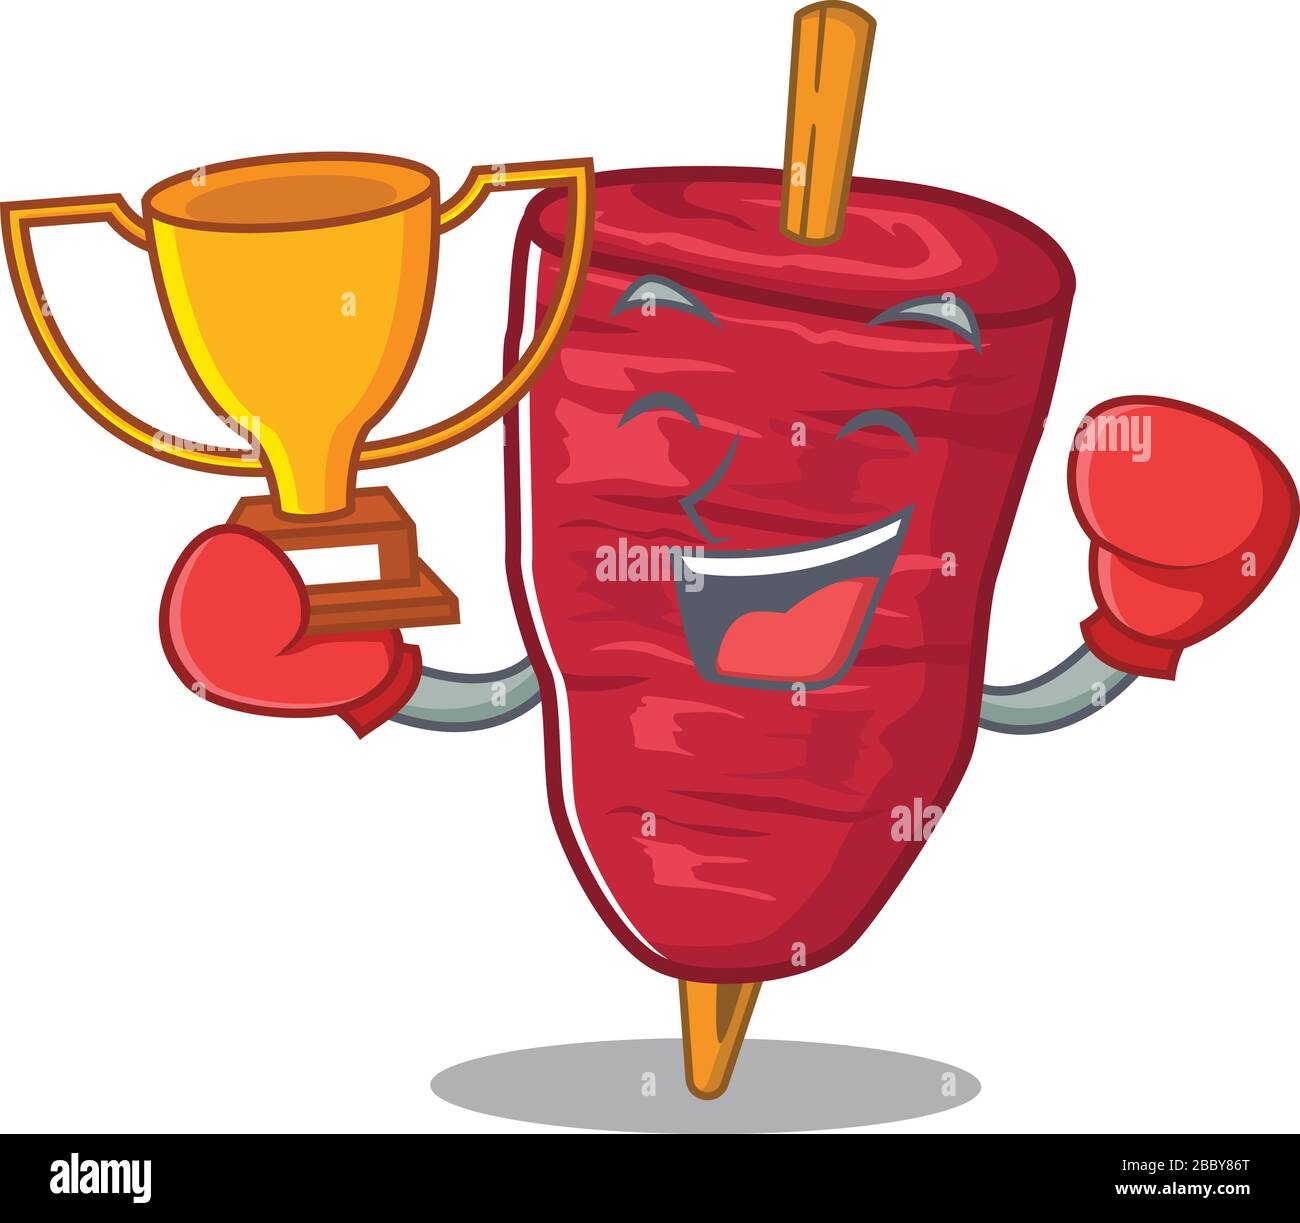 An elegant boxing winner of doner kebab mascot design style Stock Vector